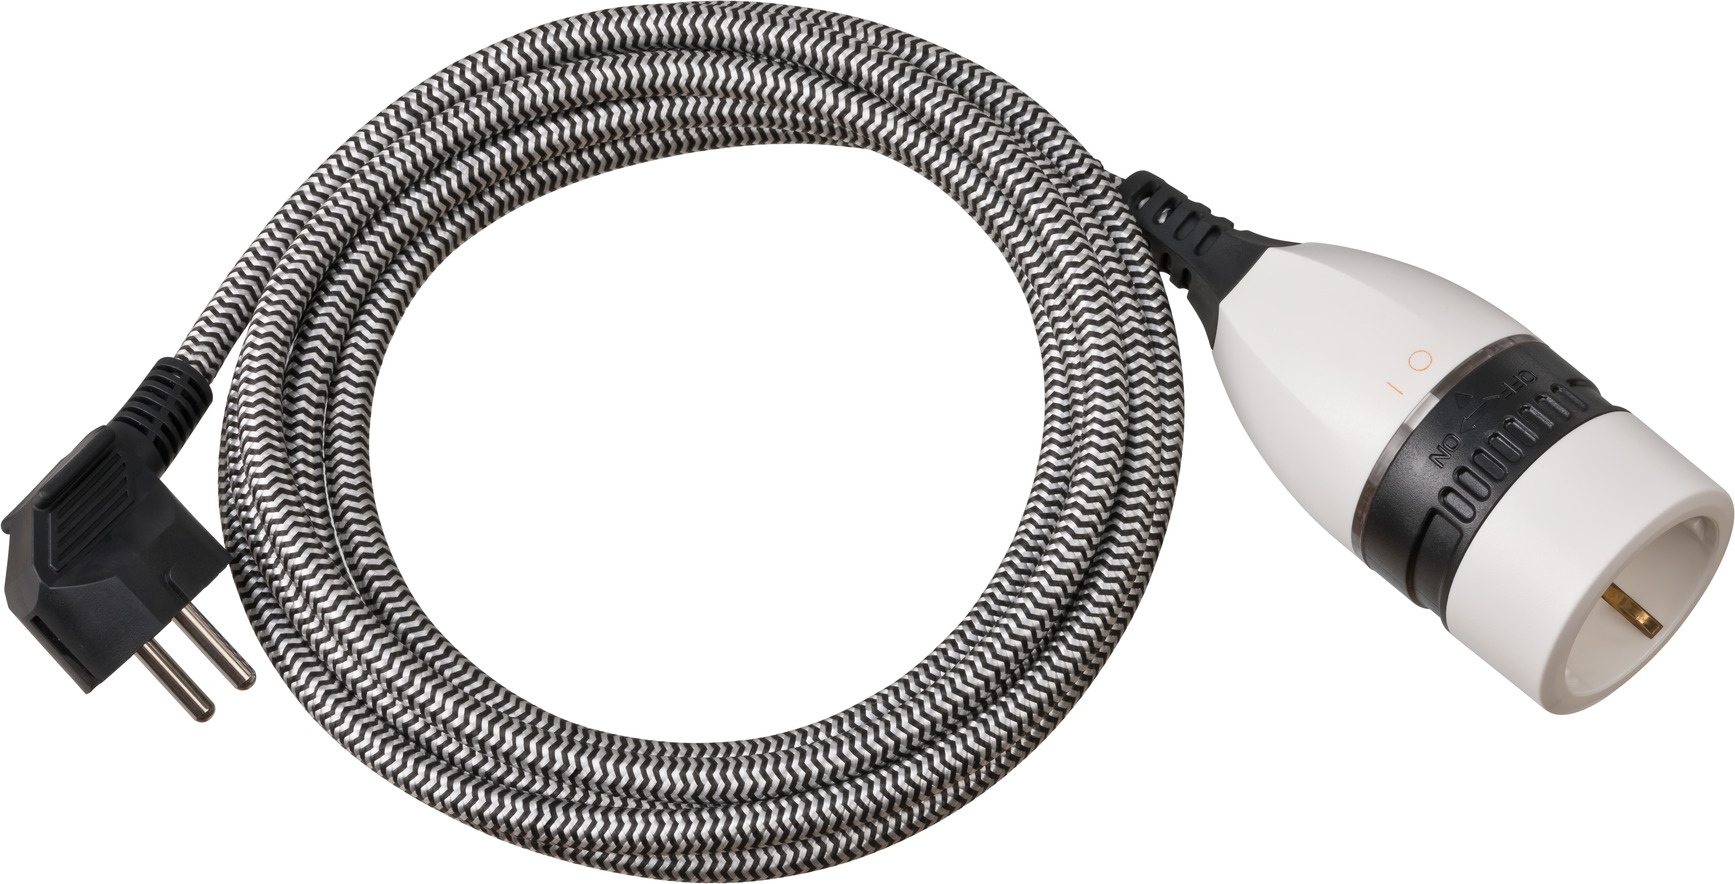 Cable alargador de corriente trifásica tendido en el suelo Fotografía de  stock - Alamy